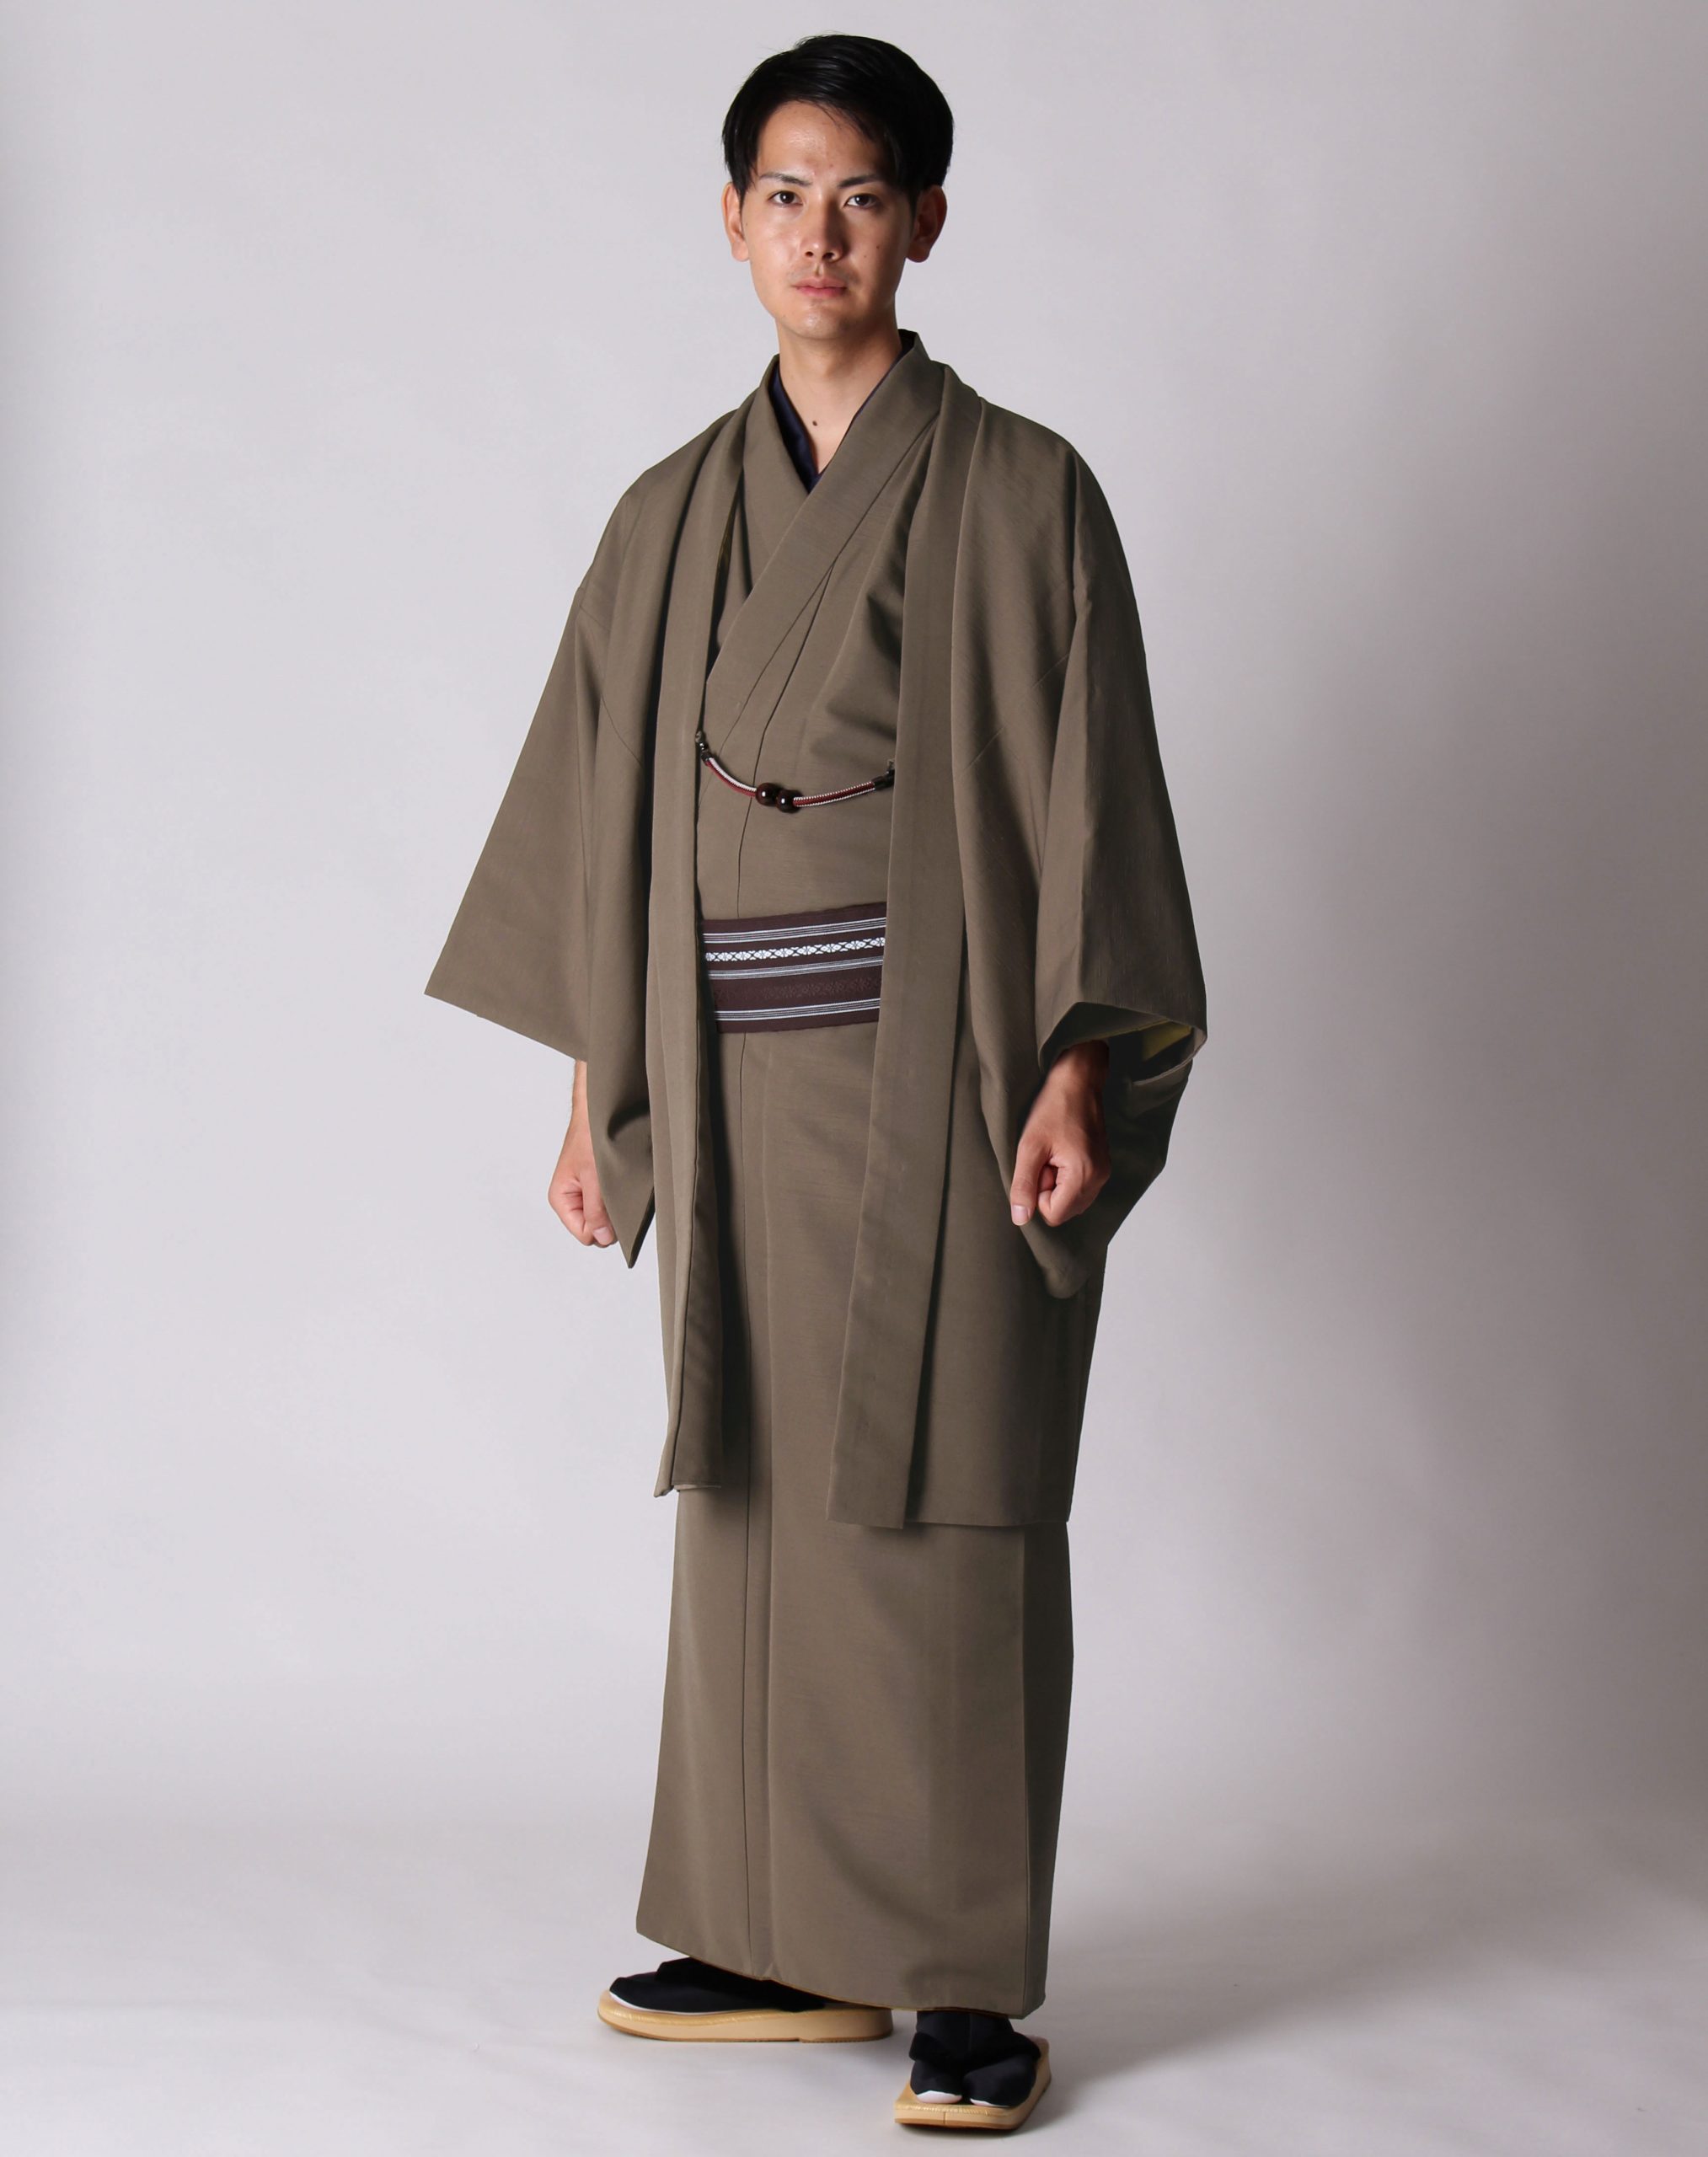 男着物の加藤商店ブログ »茶の着物と羽織の組み合わせ | 男着物の加藤 